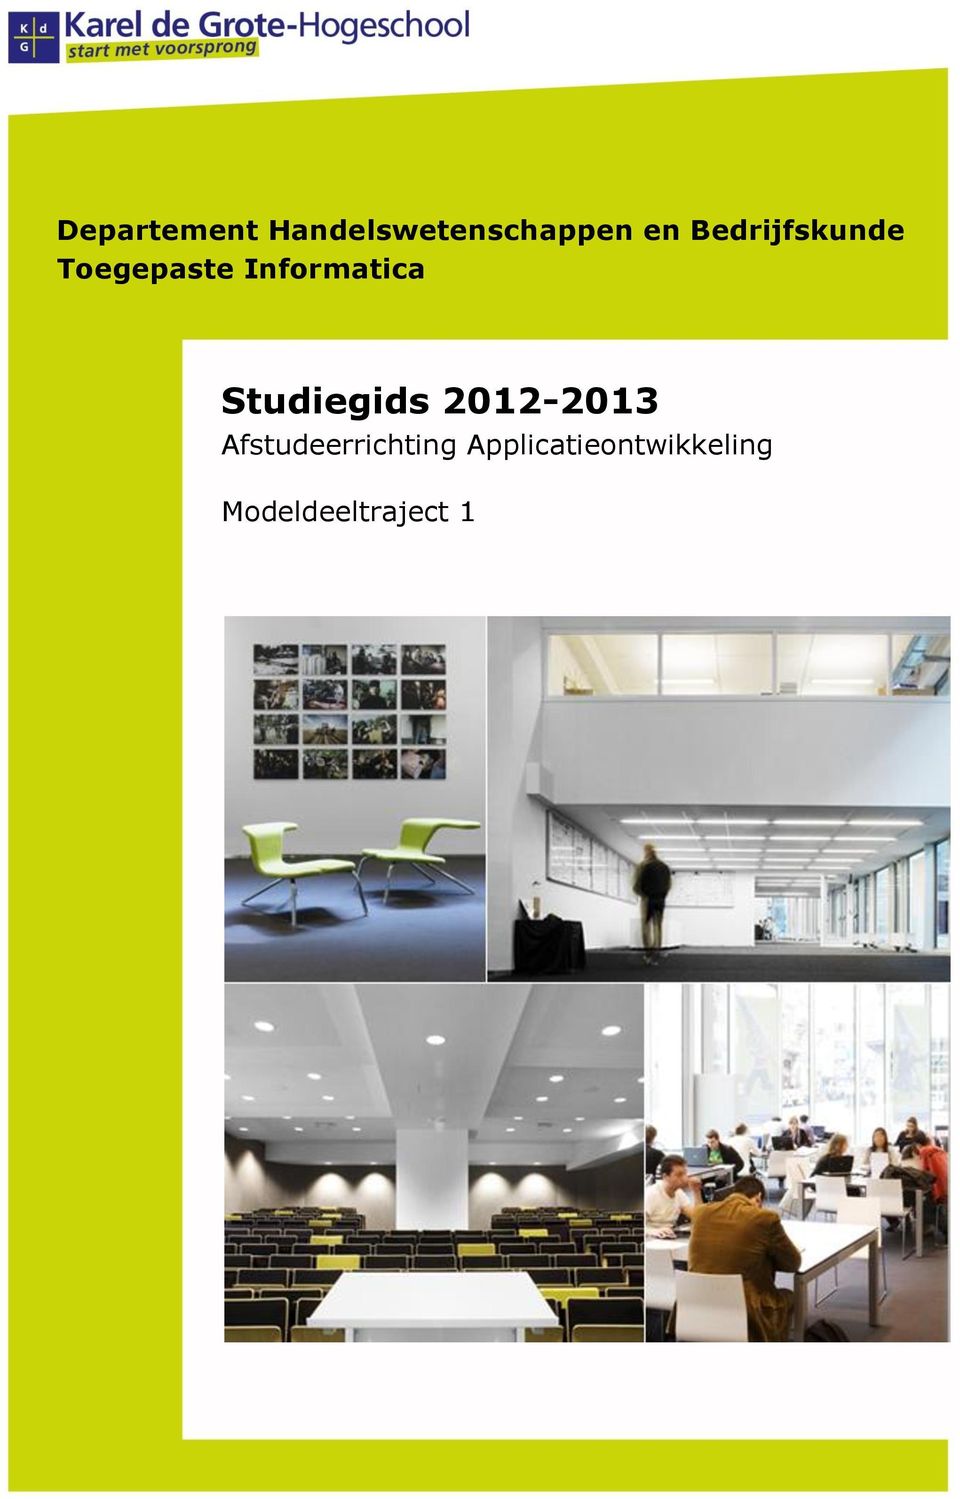 Studiegids 2012-2013 Afstudeerrichting